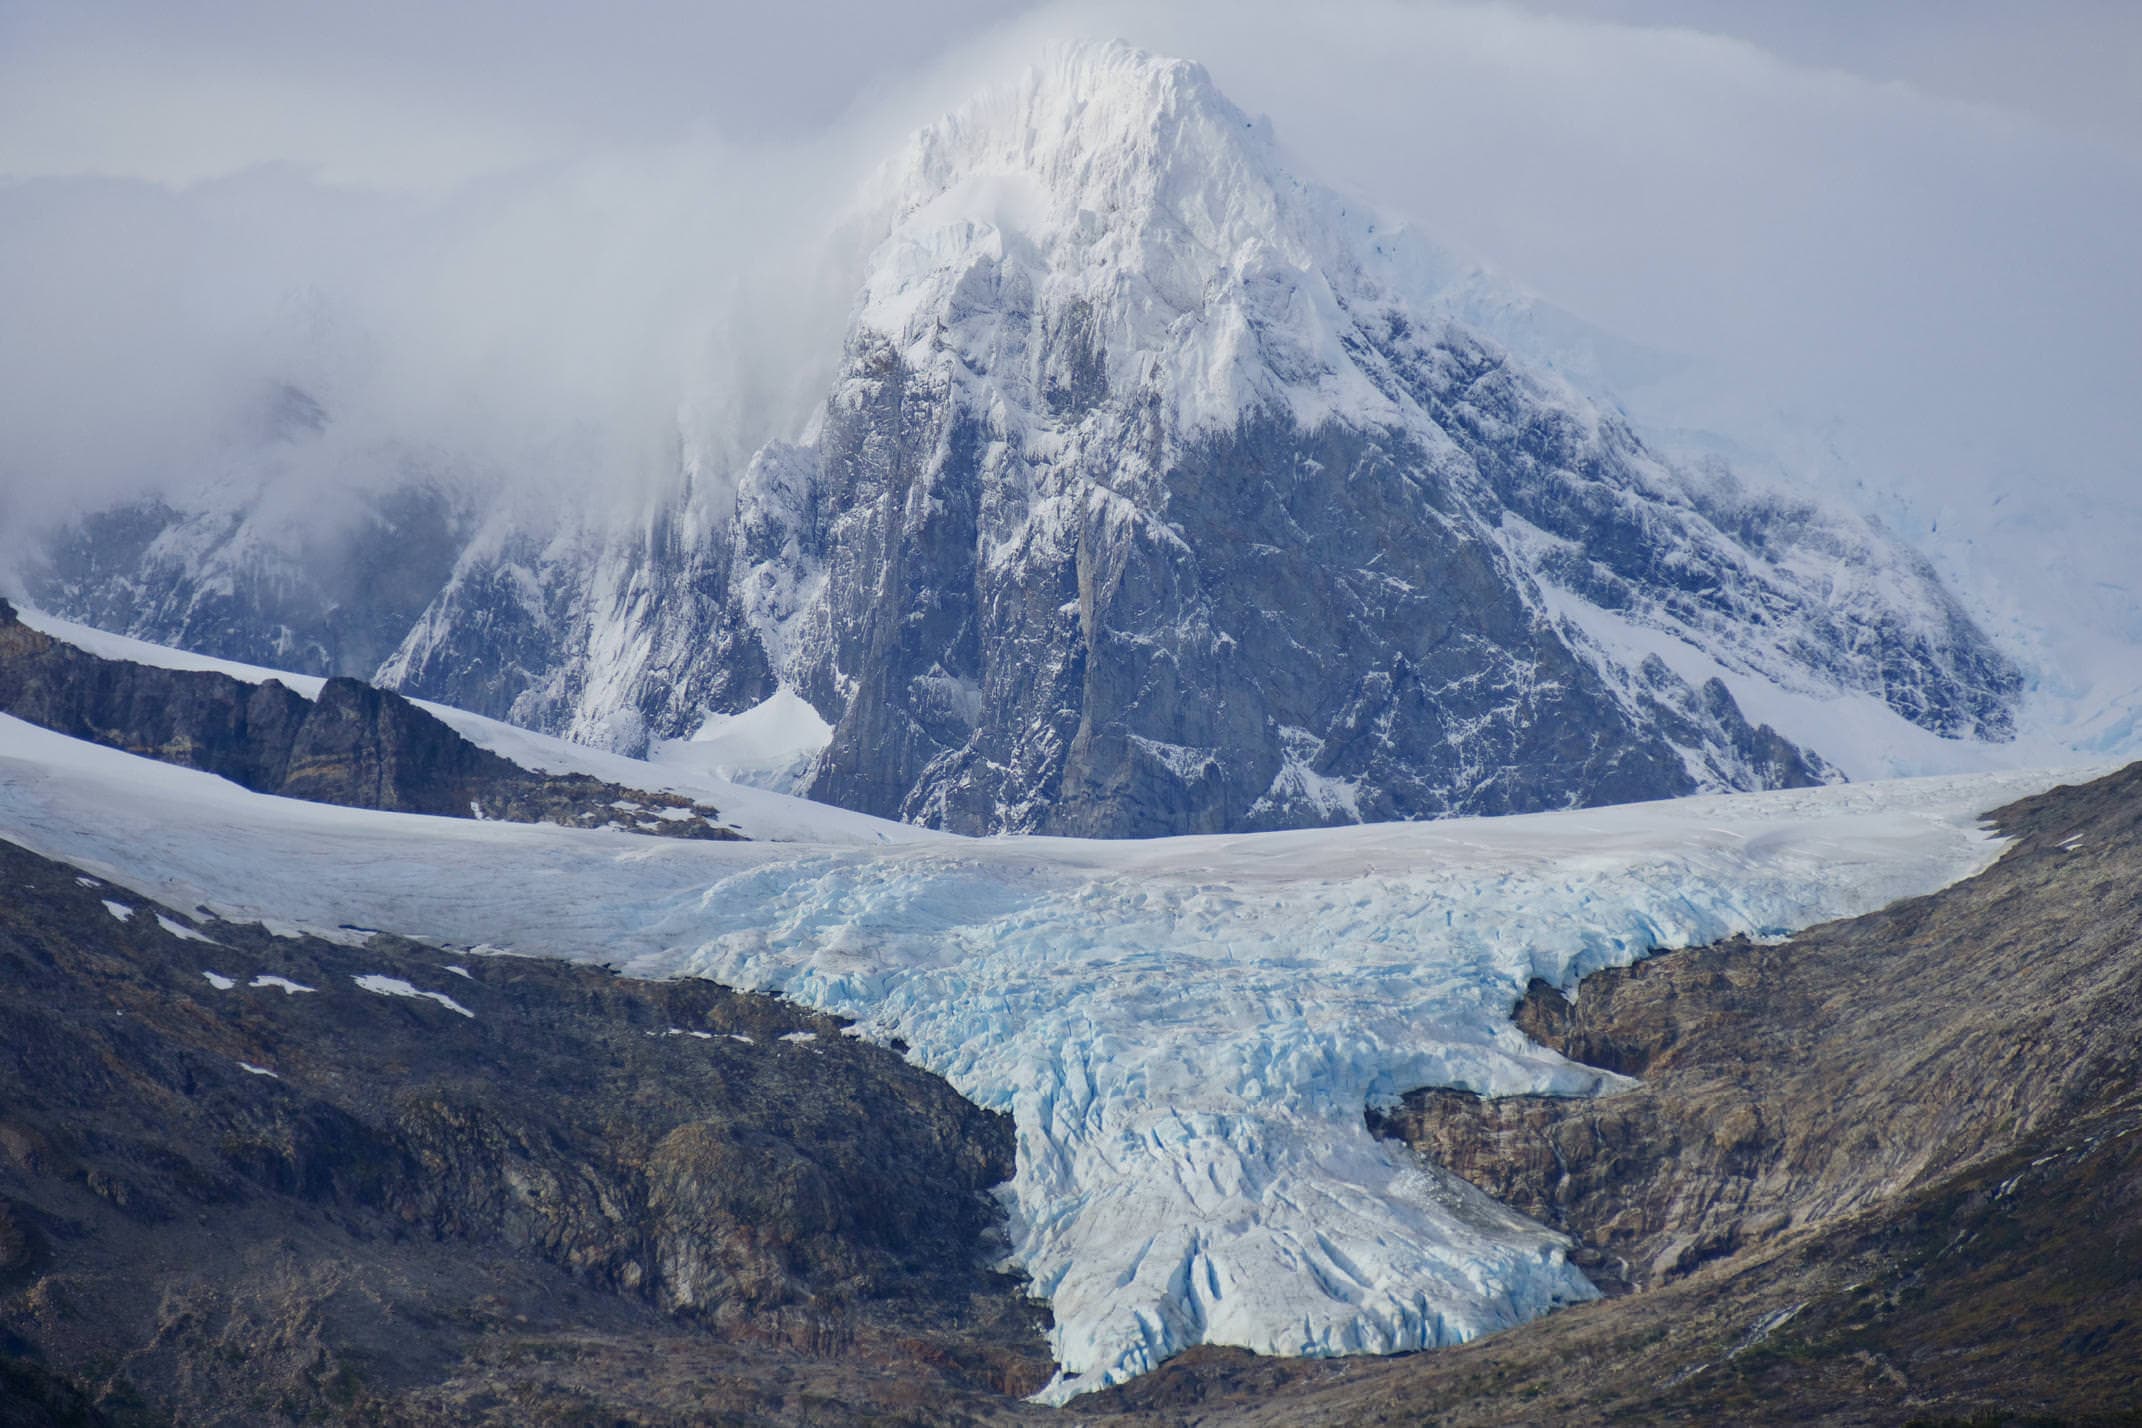 Chile beagle channel australis glacier frances c pura aventura thomas power P1330112